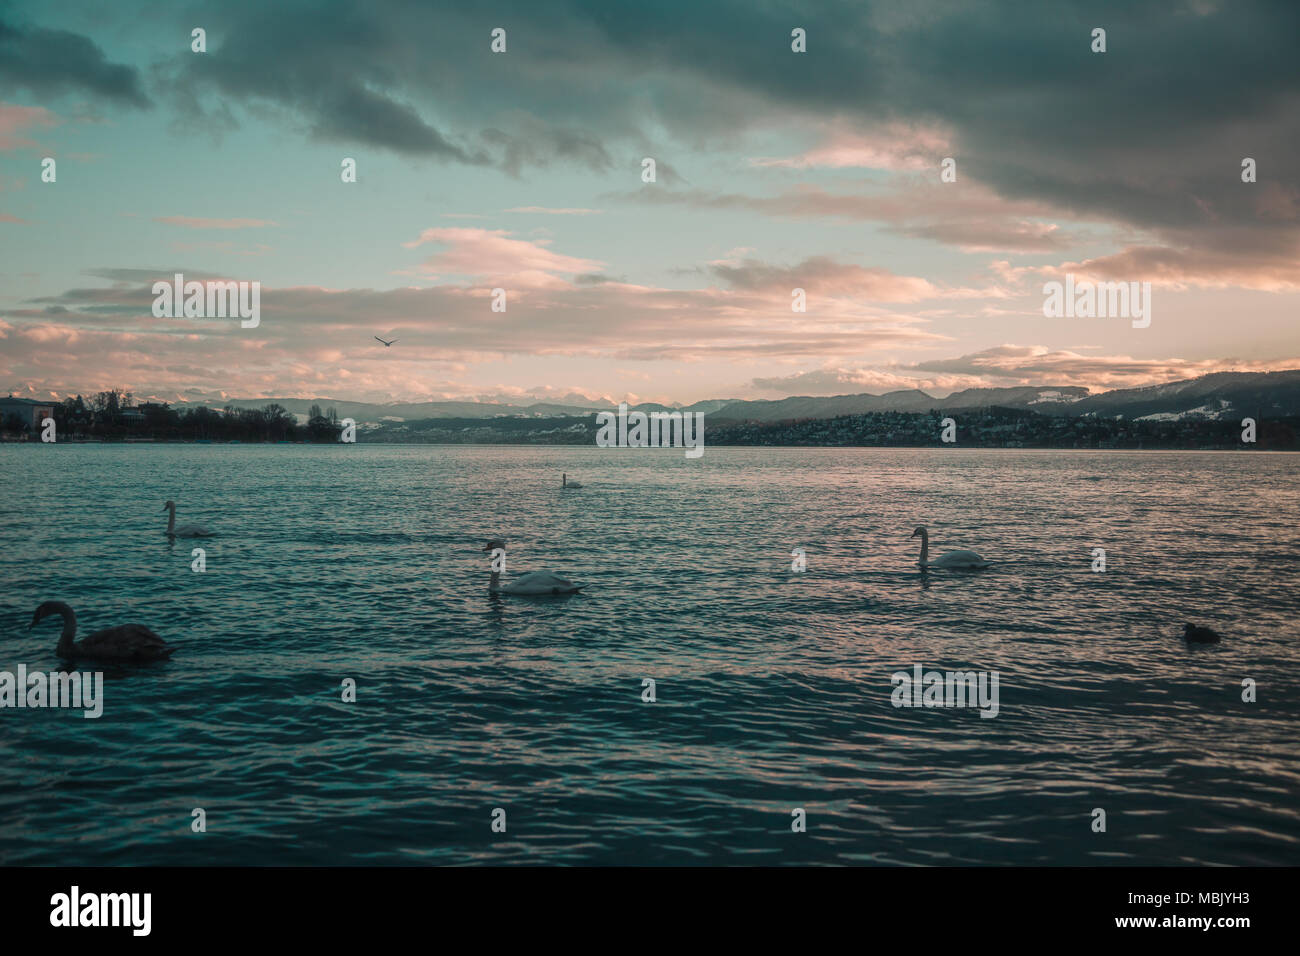 Les cygnes sur le lac de Zurich Suisse au coucher du soleil Banque D'Images